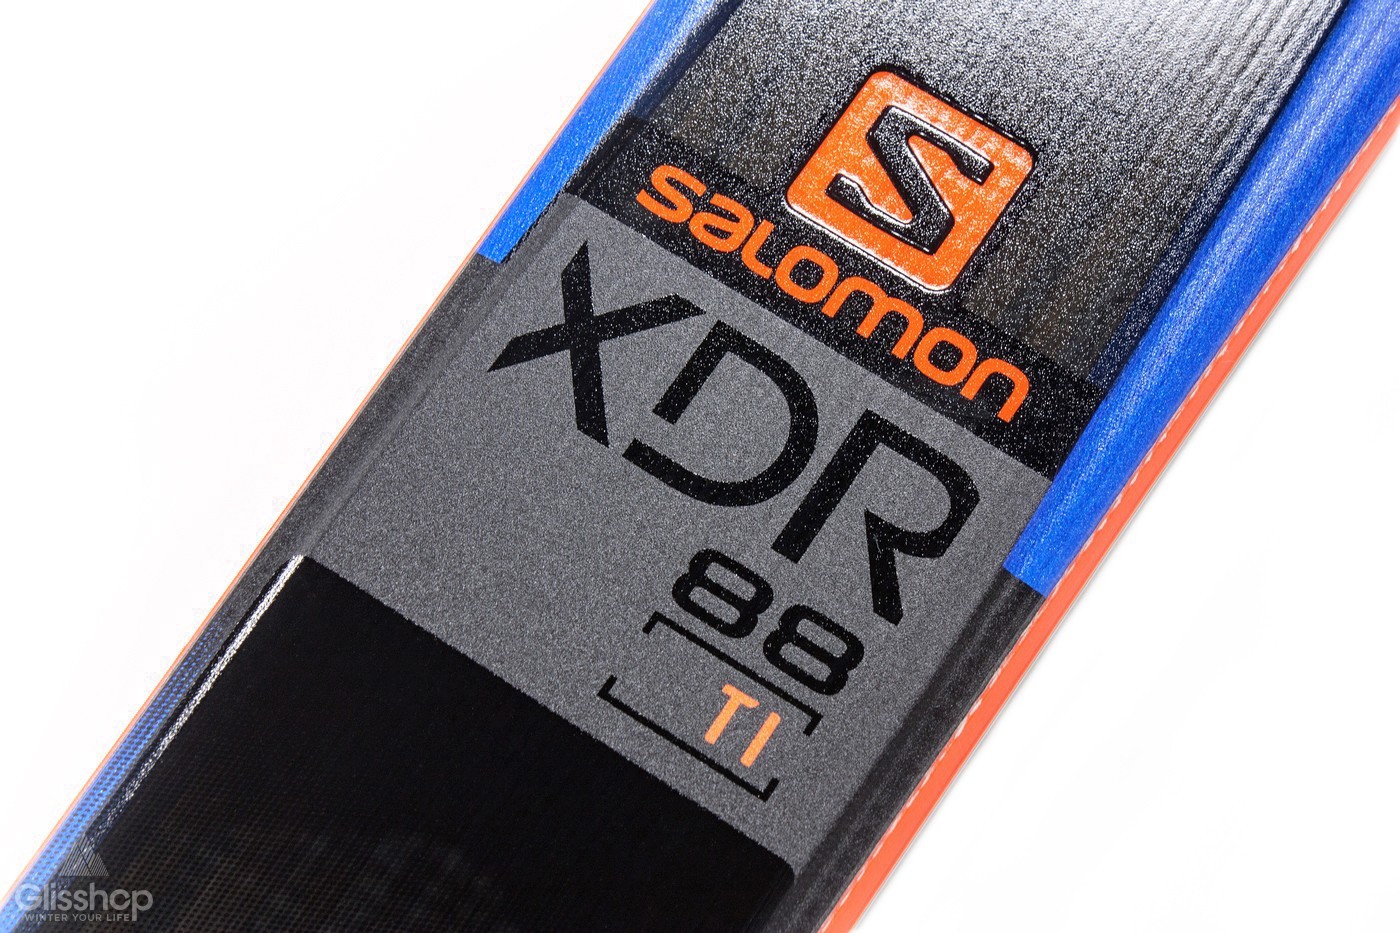 Zoom ski XDR 88 Ti Salomon